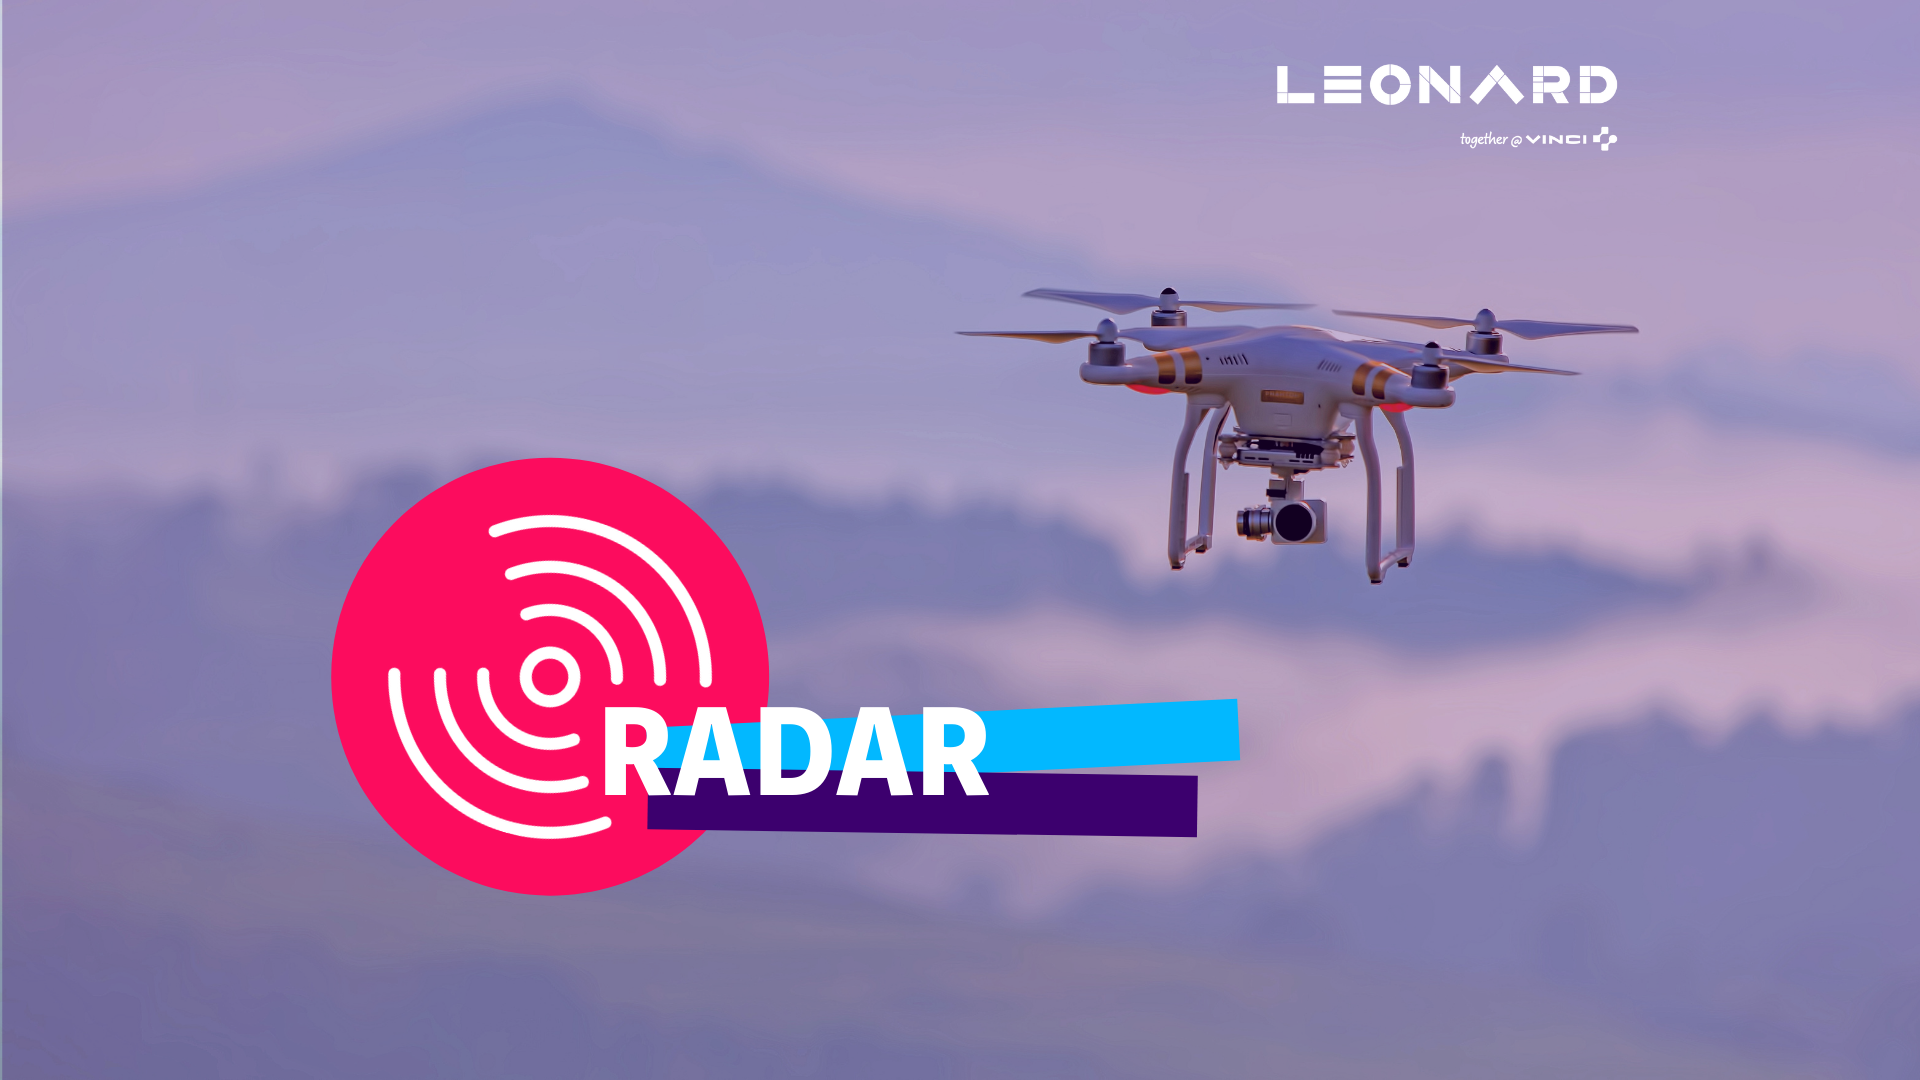 Radar – Notre sélection de business innovants #54